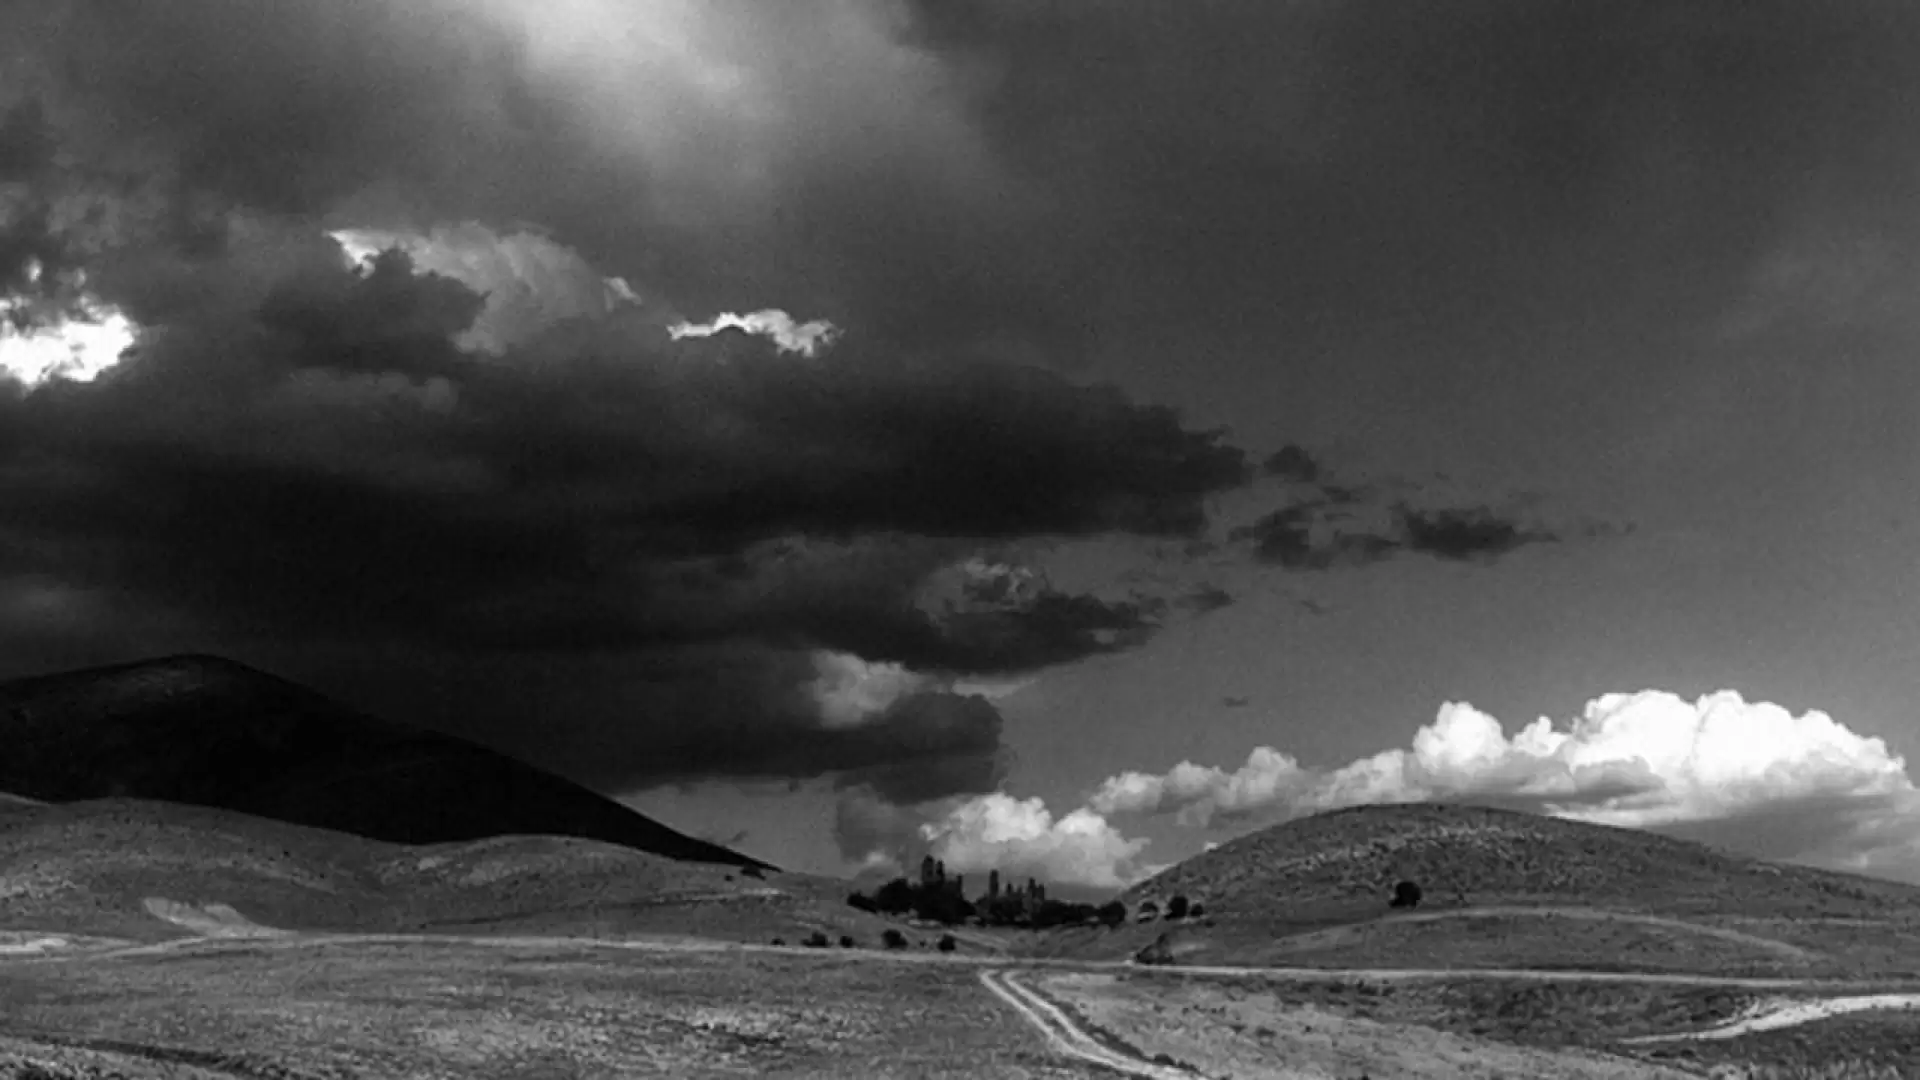 دانلود مستند Roads of Kiarostami 2006 (مسیر کیارستمی)